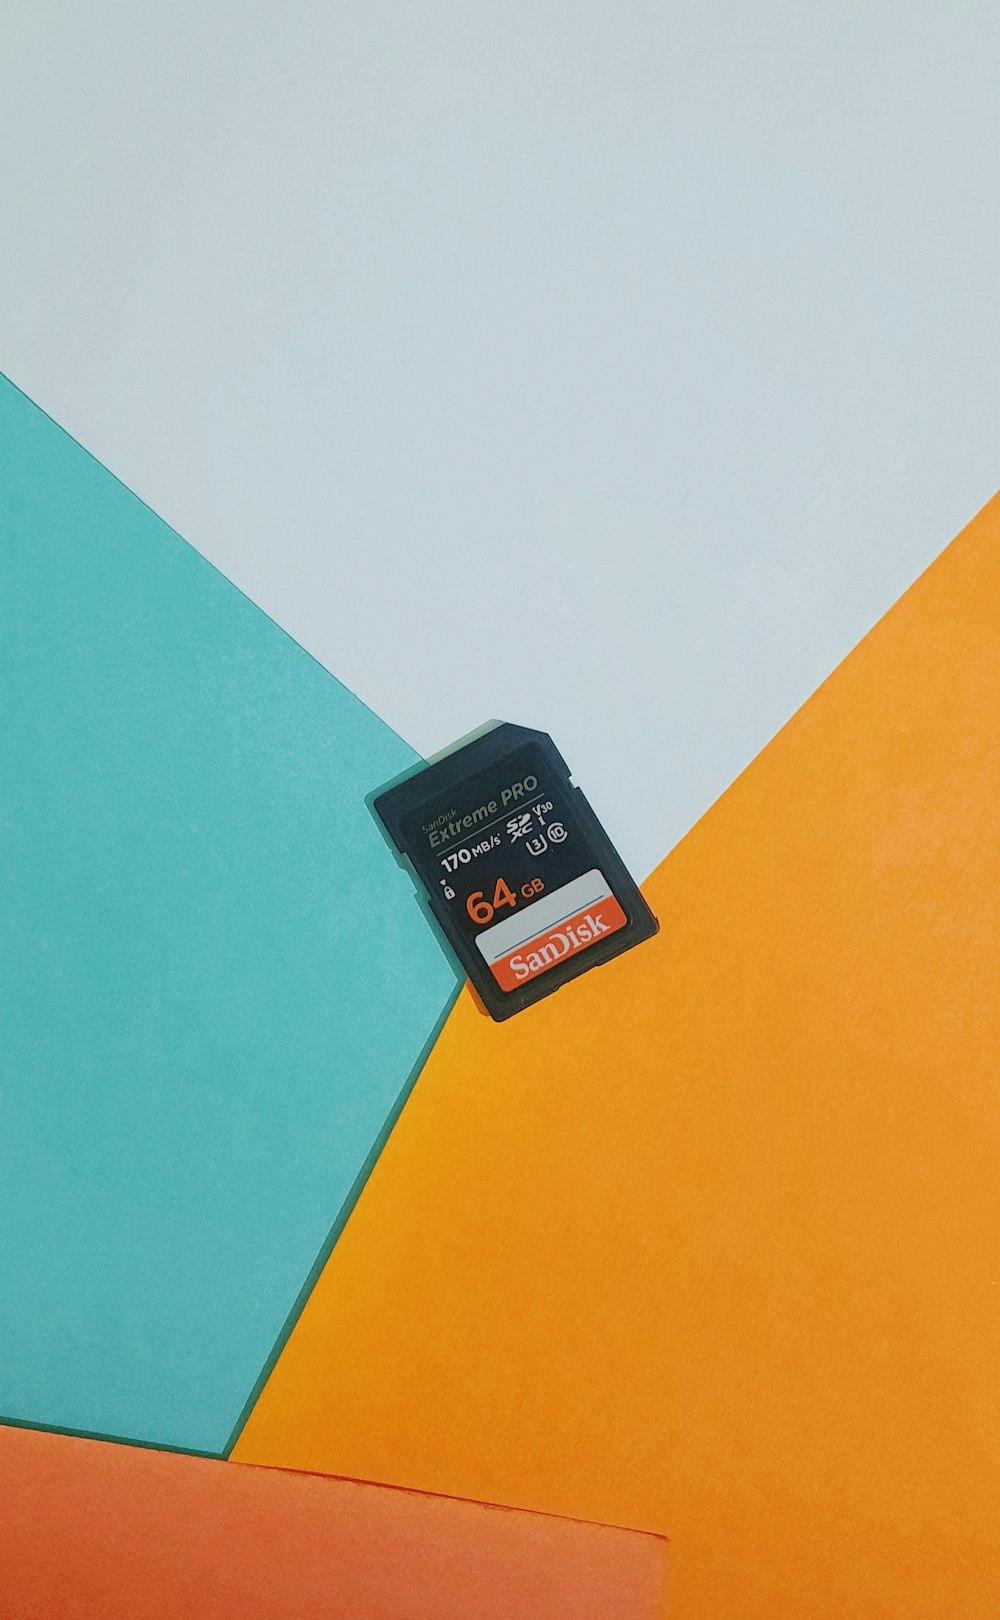 Una scheda SIM seduta in cima a un muro colorato